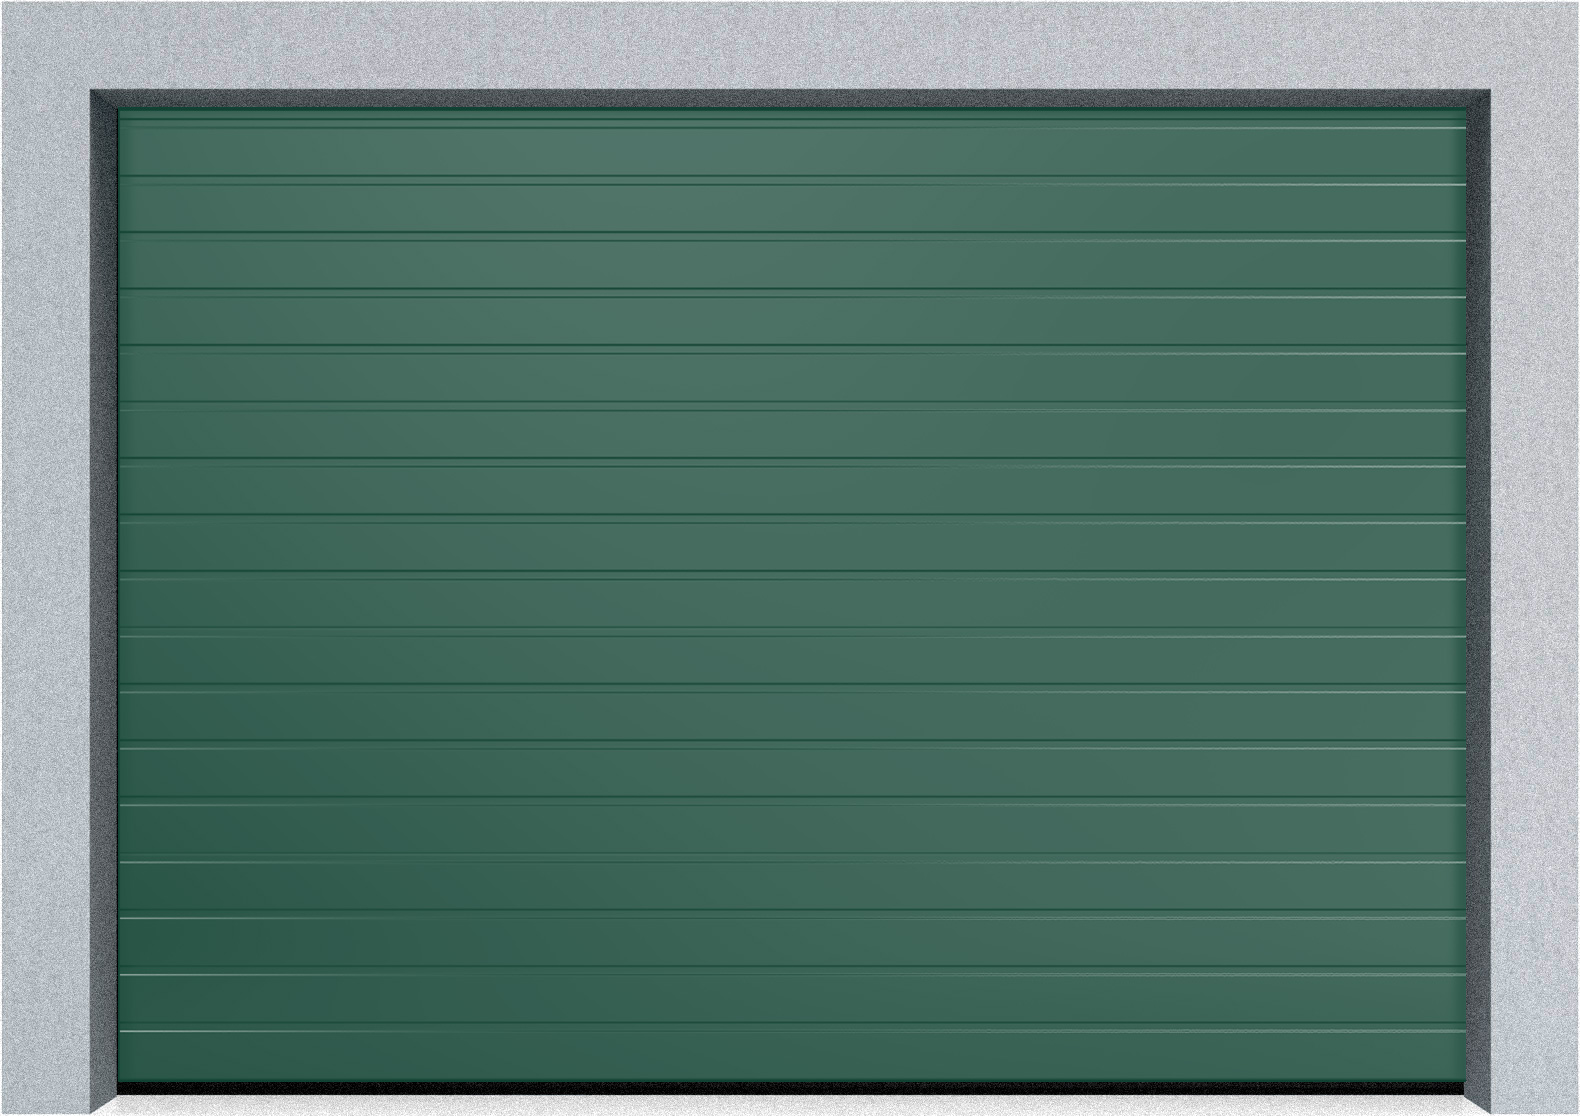  Автоматические секционные промышленные ворота DoorHan ISD ThermalPro 3400x5000 S-гофр, M-гофр, Микроволна стандартные цвета, фото 7 